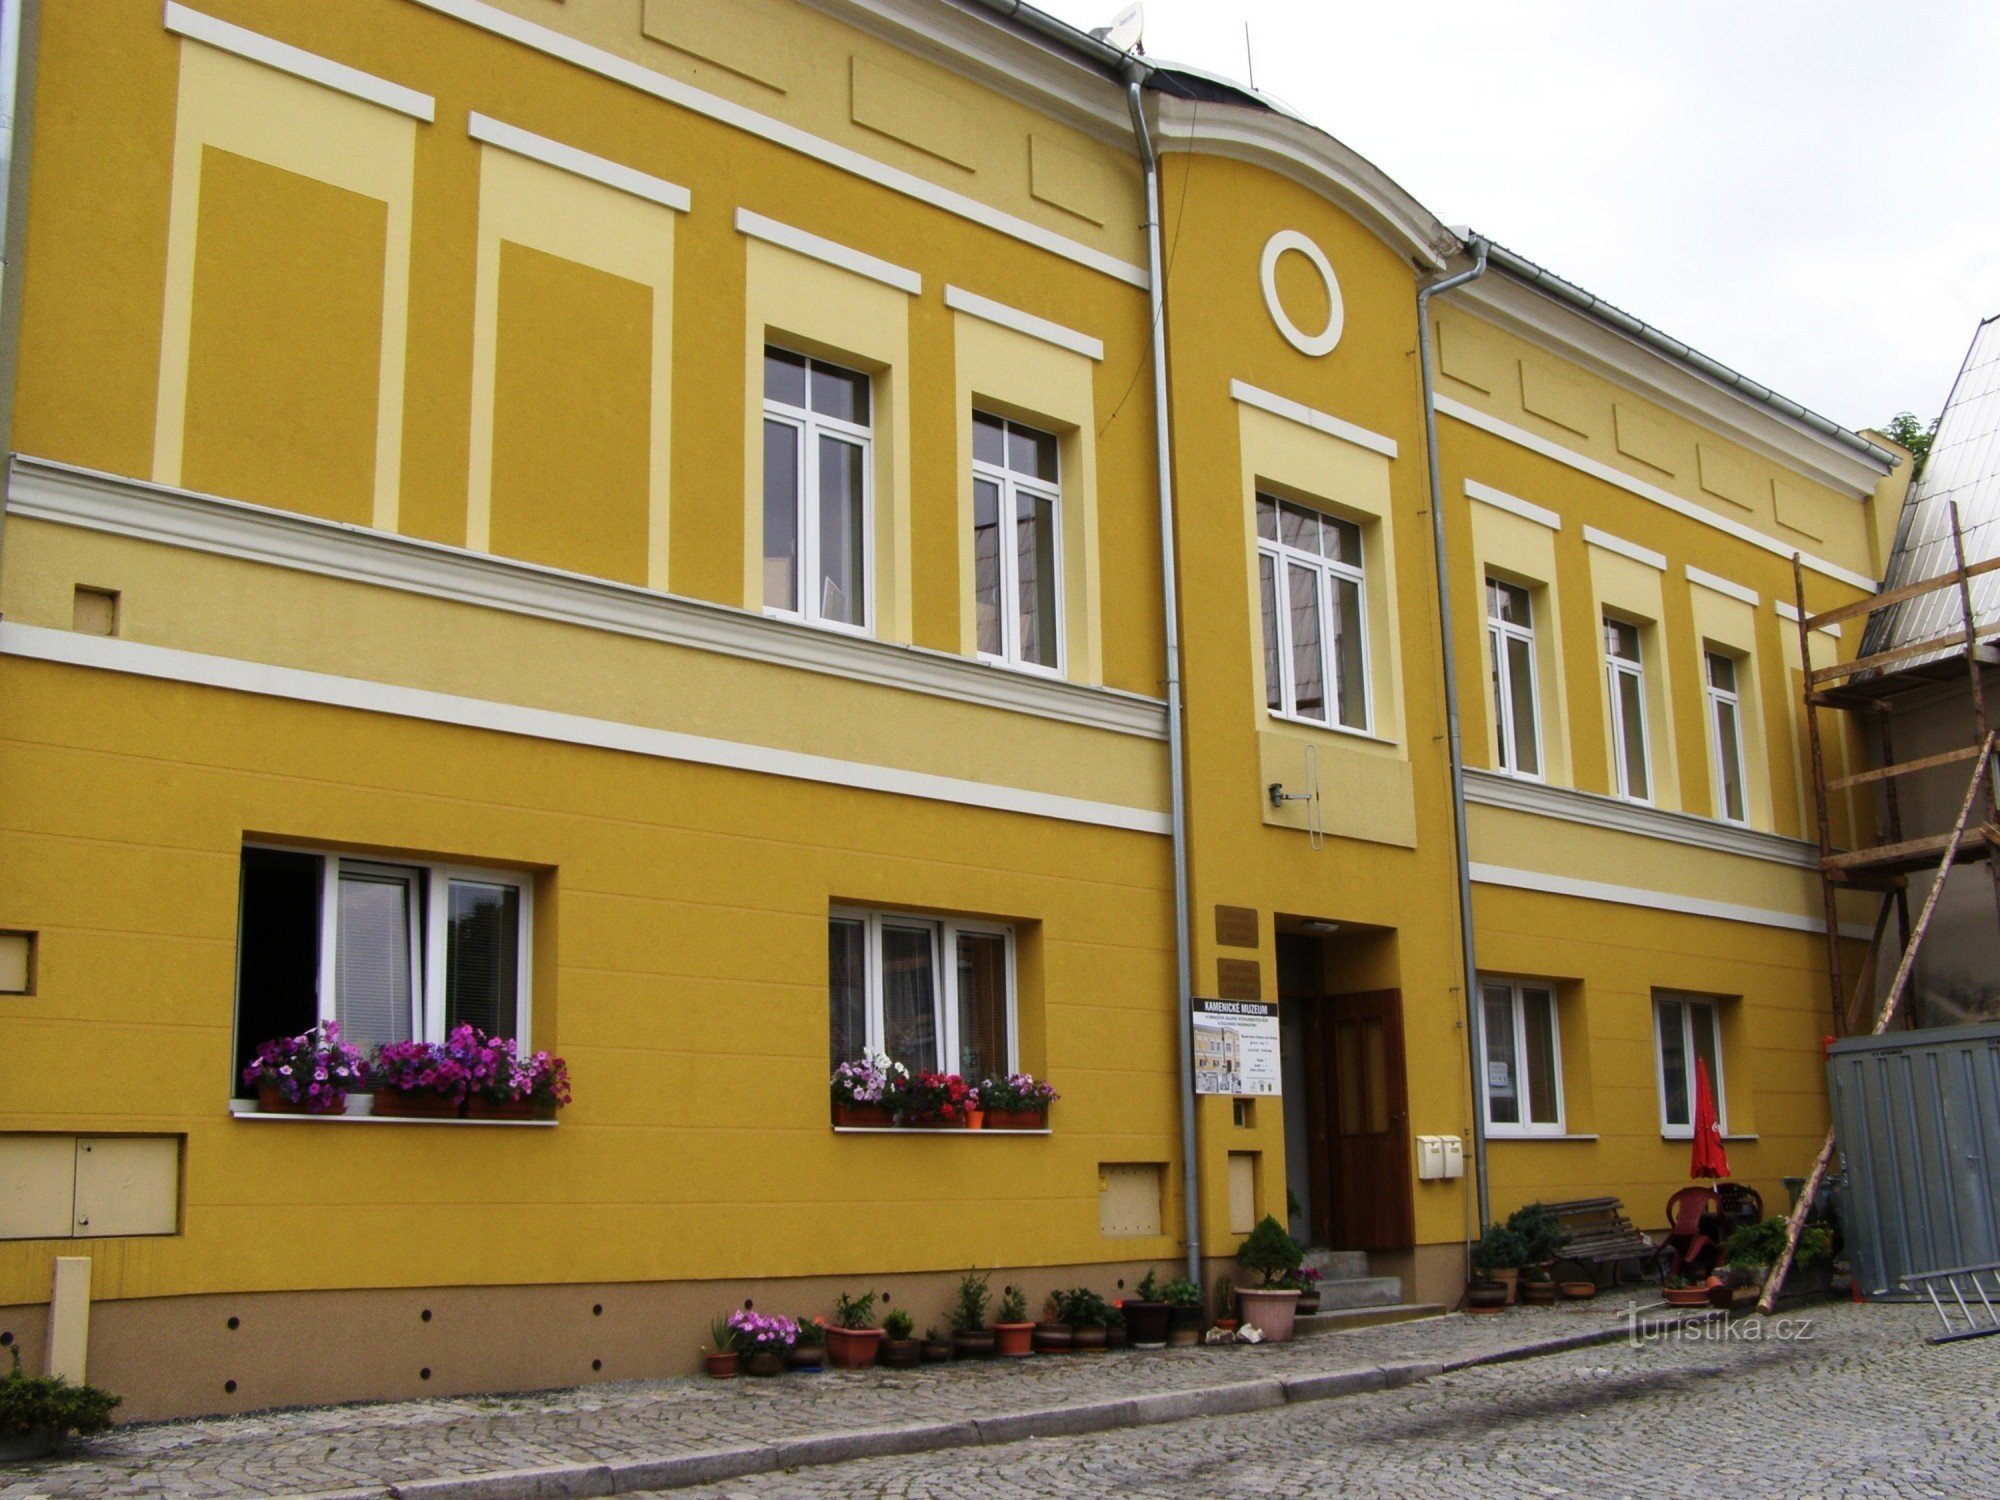 Žulová - Kamenické múzeum, Turisztikai információs központ, könyvtár